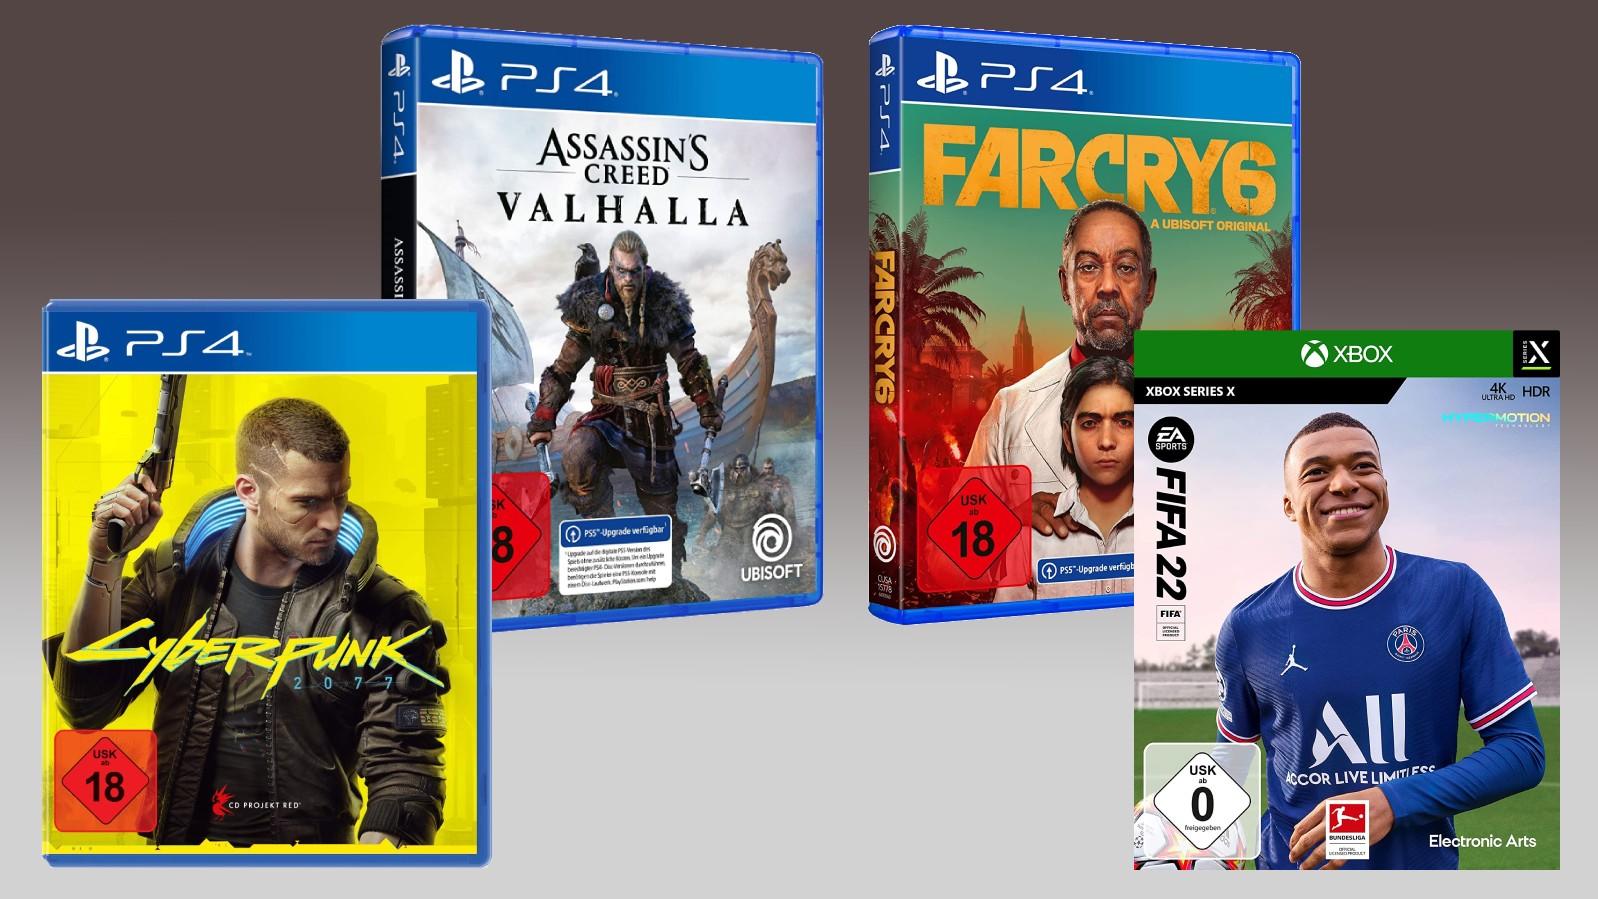 Farcry, Fifa, Assassins Creed und Cyberpunk-Spielecover vor einem grauen Hintergrund.